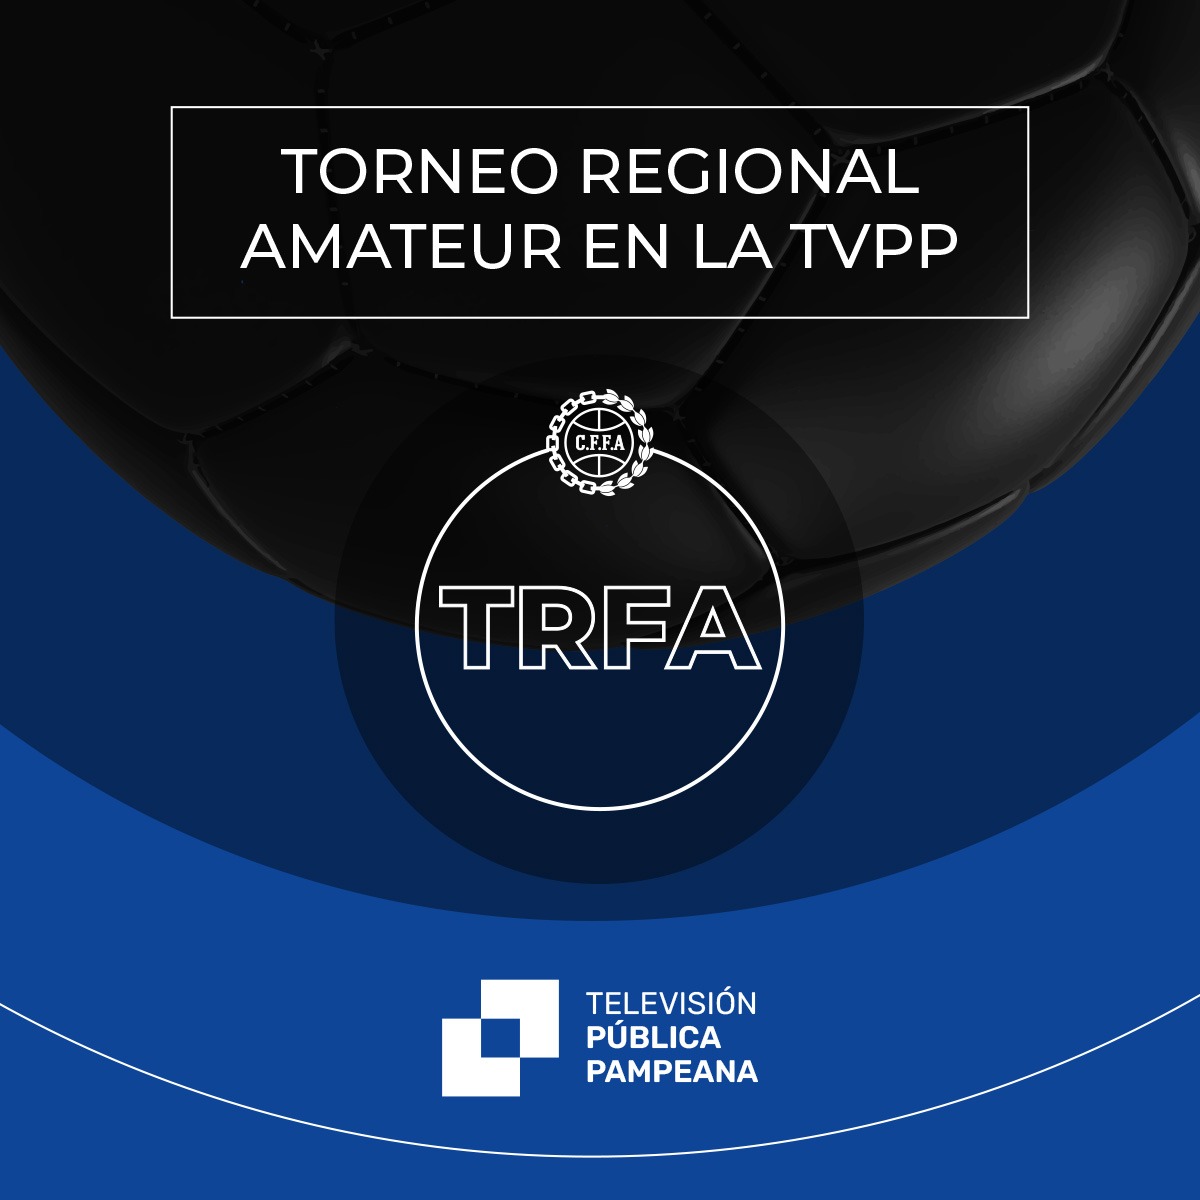  Inicia la transmisión del Regional Federal Amateur por la TVPP